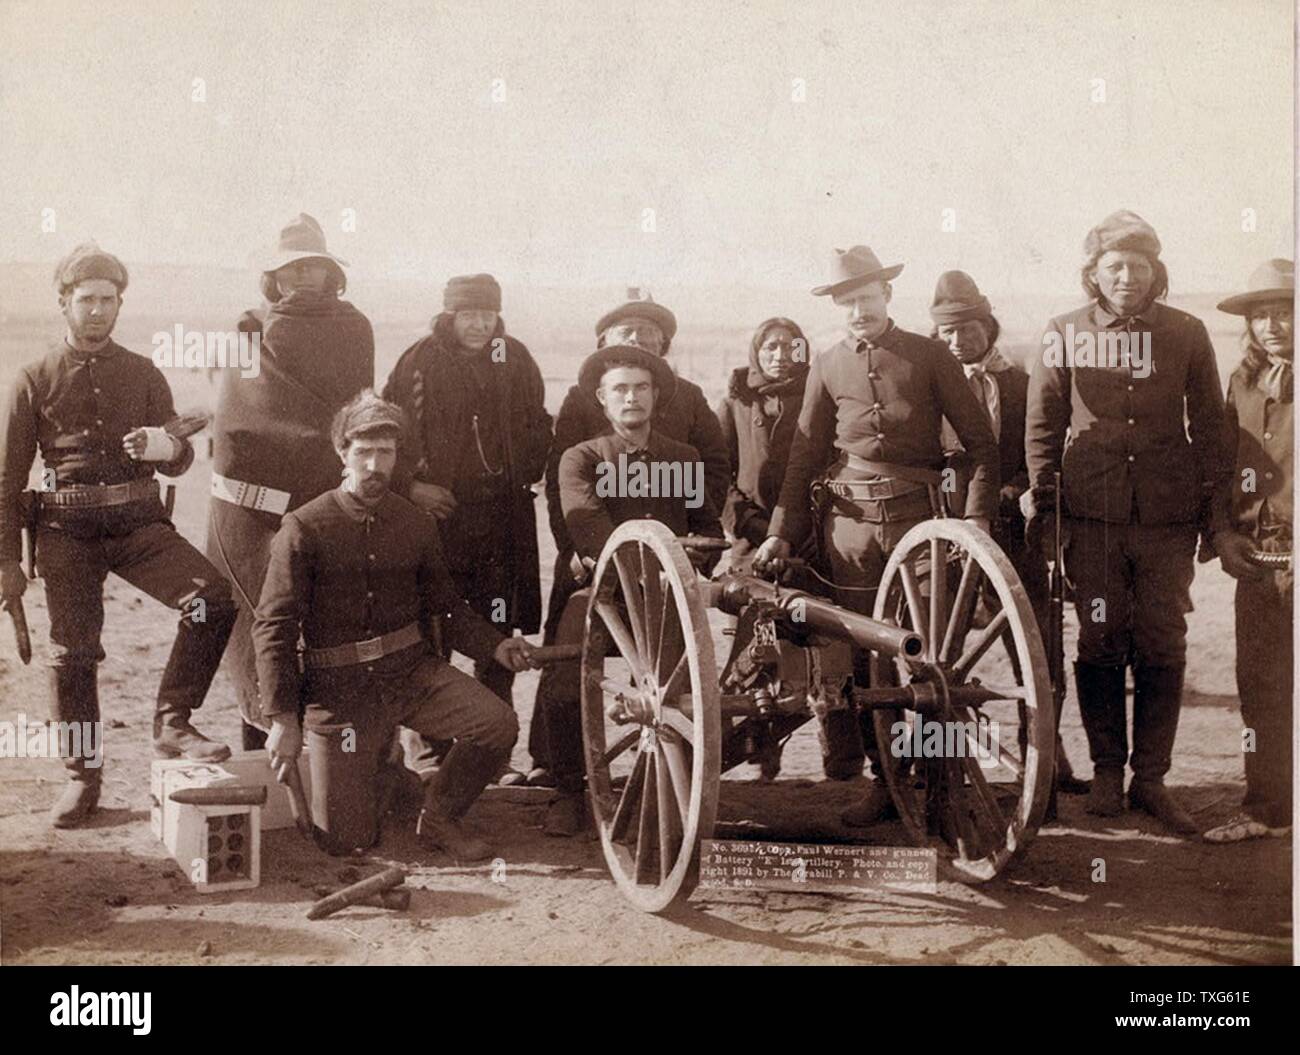 Corporal Paul Wienert und Gunners der Batterie 'E' 1 Artillerie sieben Lakota Indianer Pfadfinder und uniformierten Europäisch-amerikanische Soldaten Stockfoto